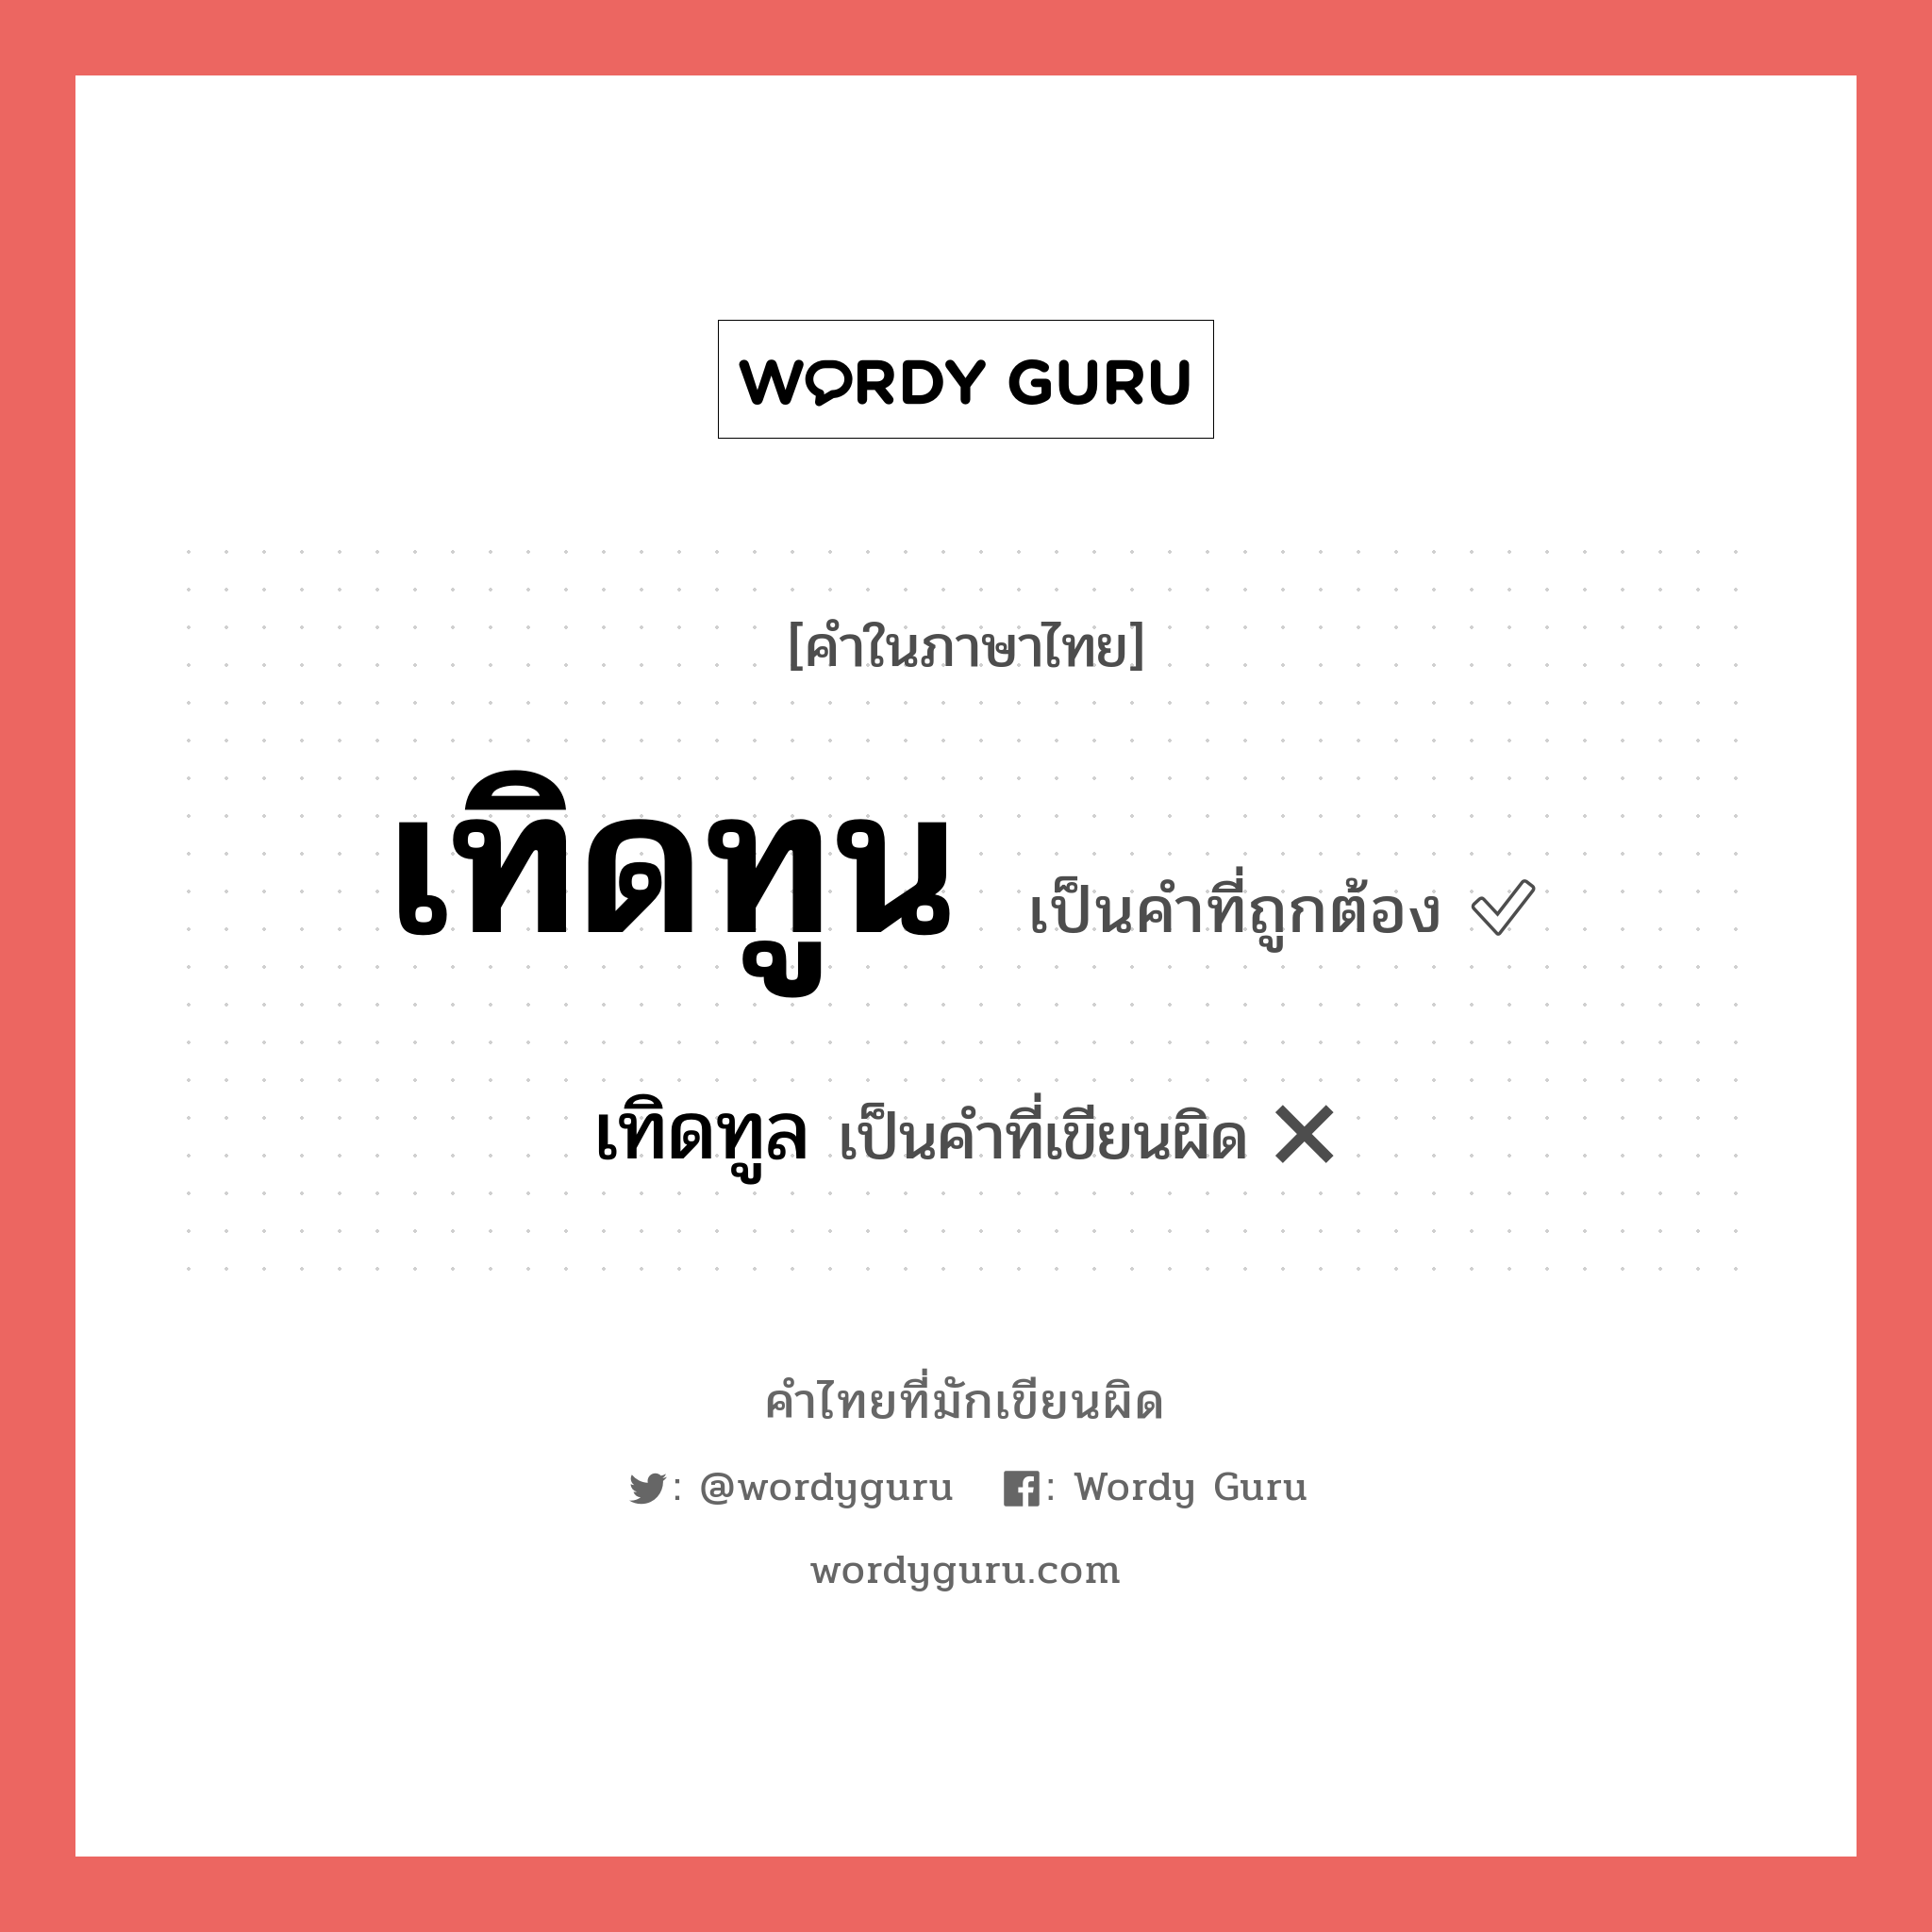 เทิดทูล หรือ เทิดทูน คำไหนเขียนถูก?, คำในภาษาไทยที่มักเขียนผิด เทิดทูล คำที่ผิด ❌ เทิดทูน